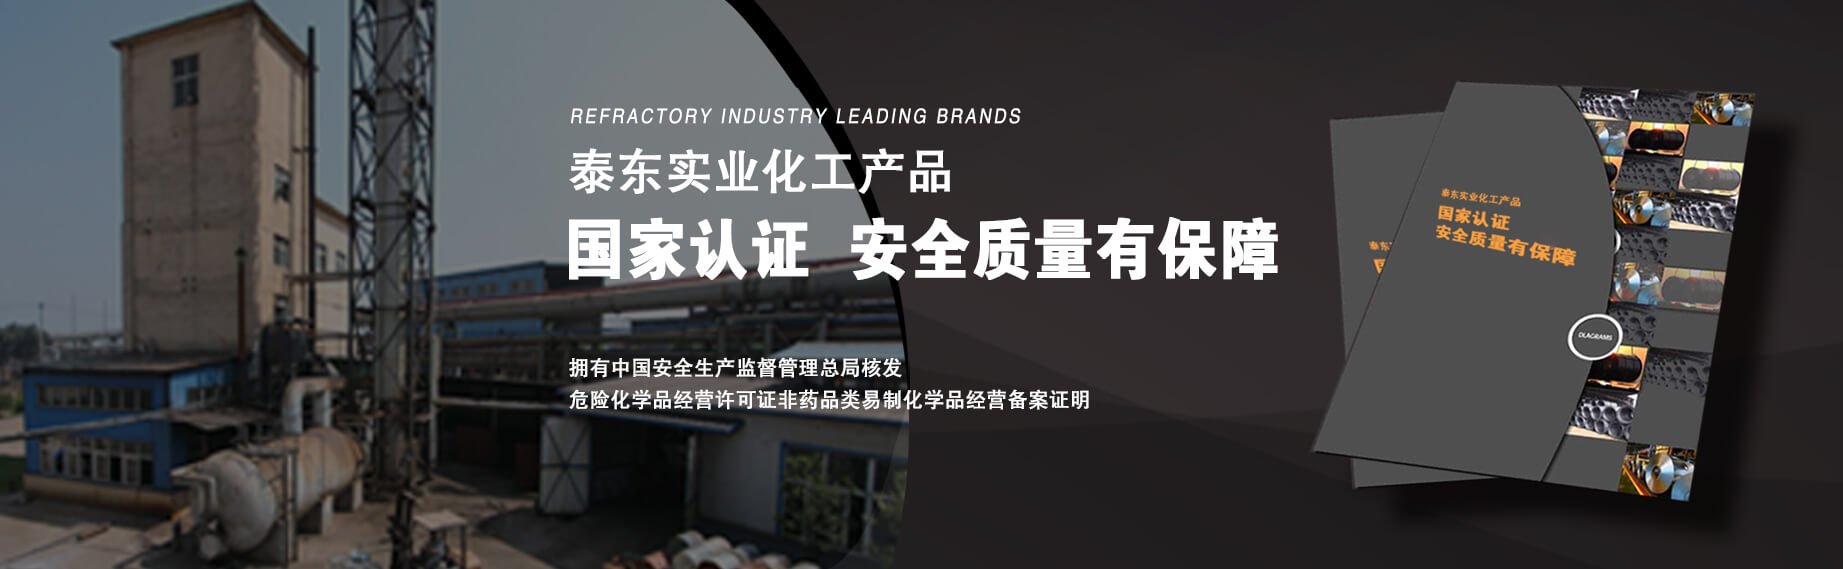 化工中国冶金行业知名品牌